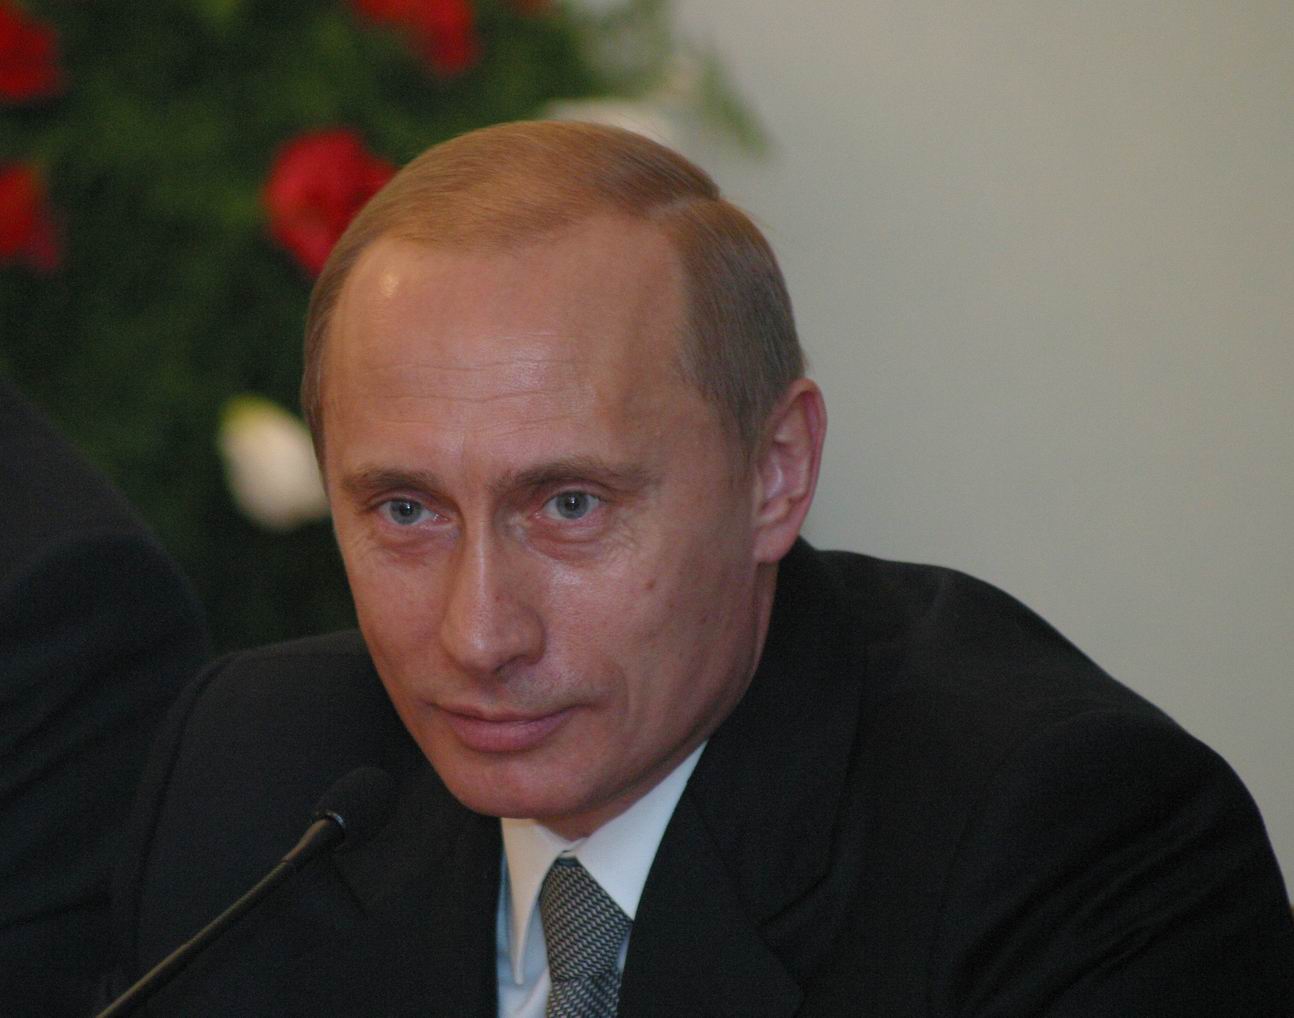 壁紙 ウラジーミル プーチン 男性 凝視 顔 大統領 有名人 少女 ダウンロード 写真